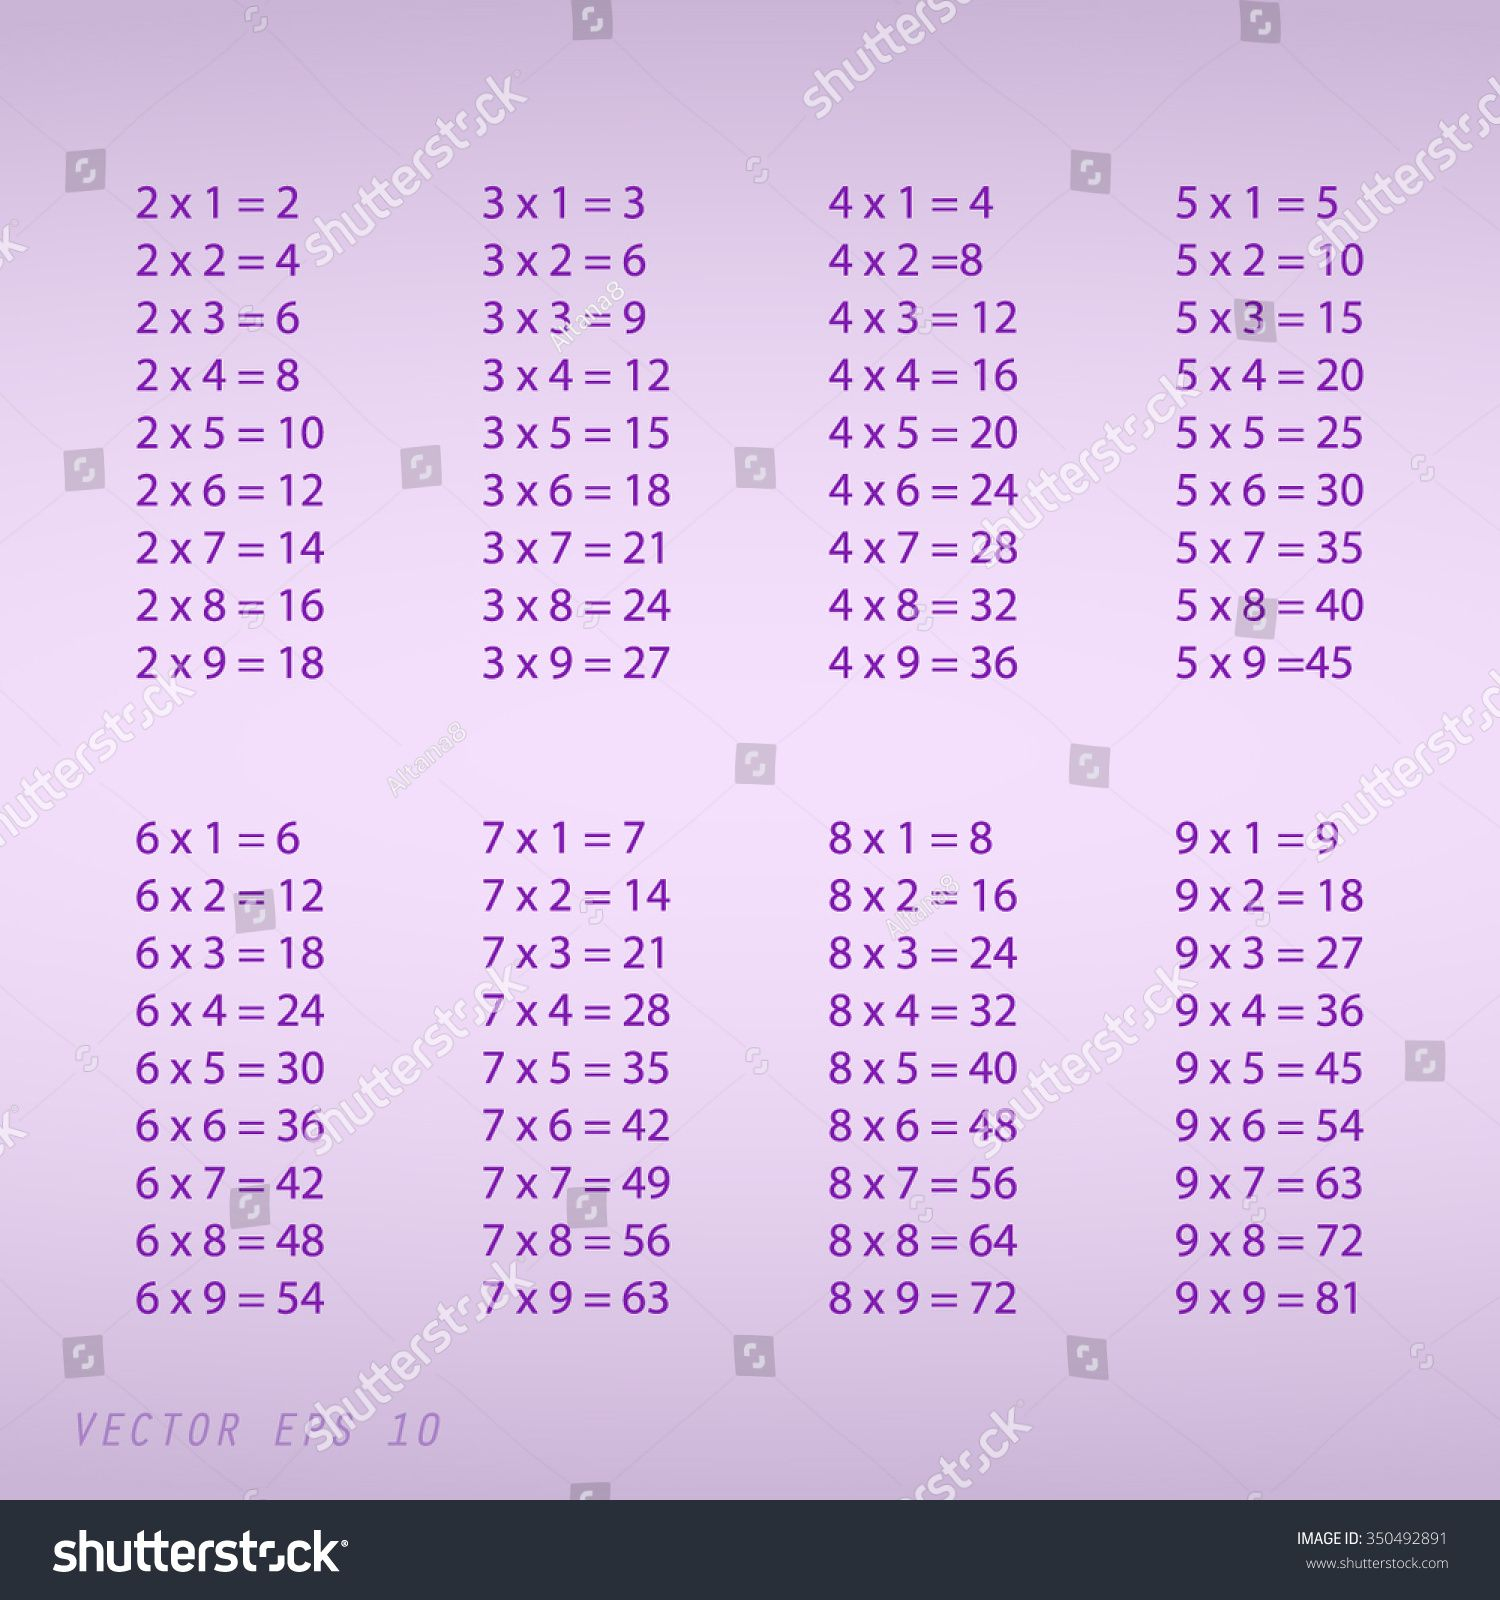 9×9 Multiplication Table | Multiplication Table